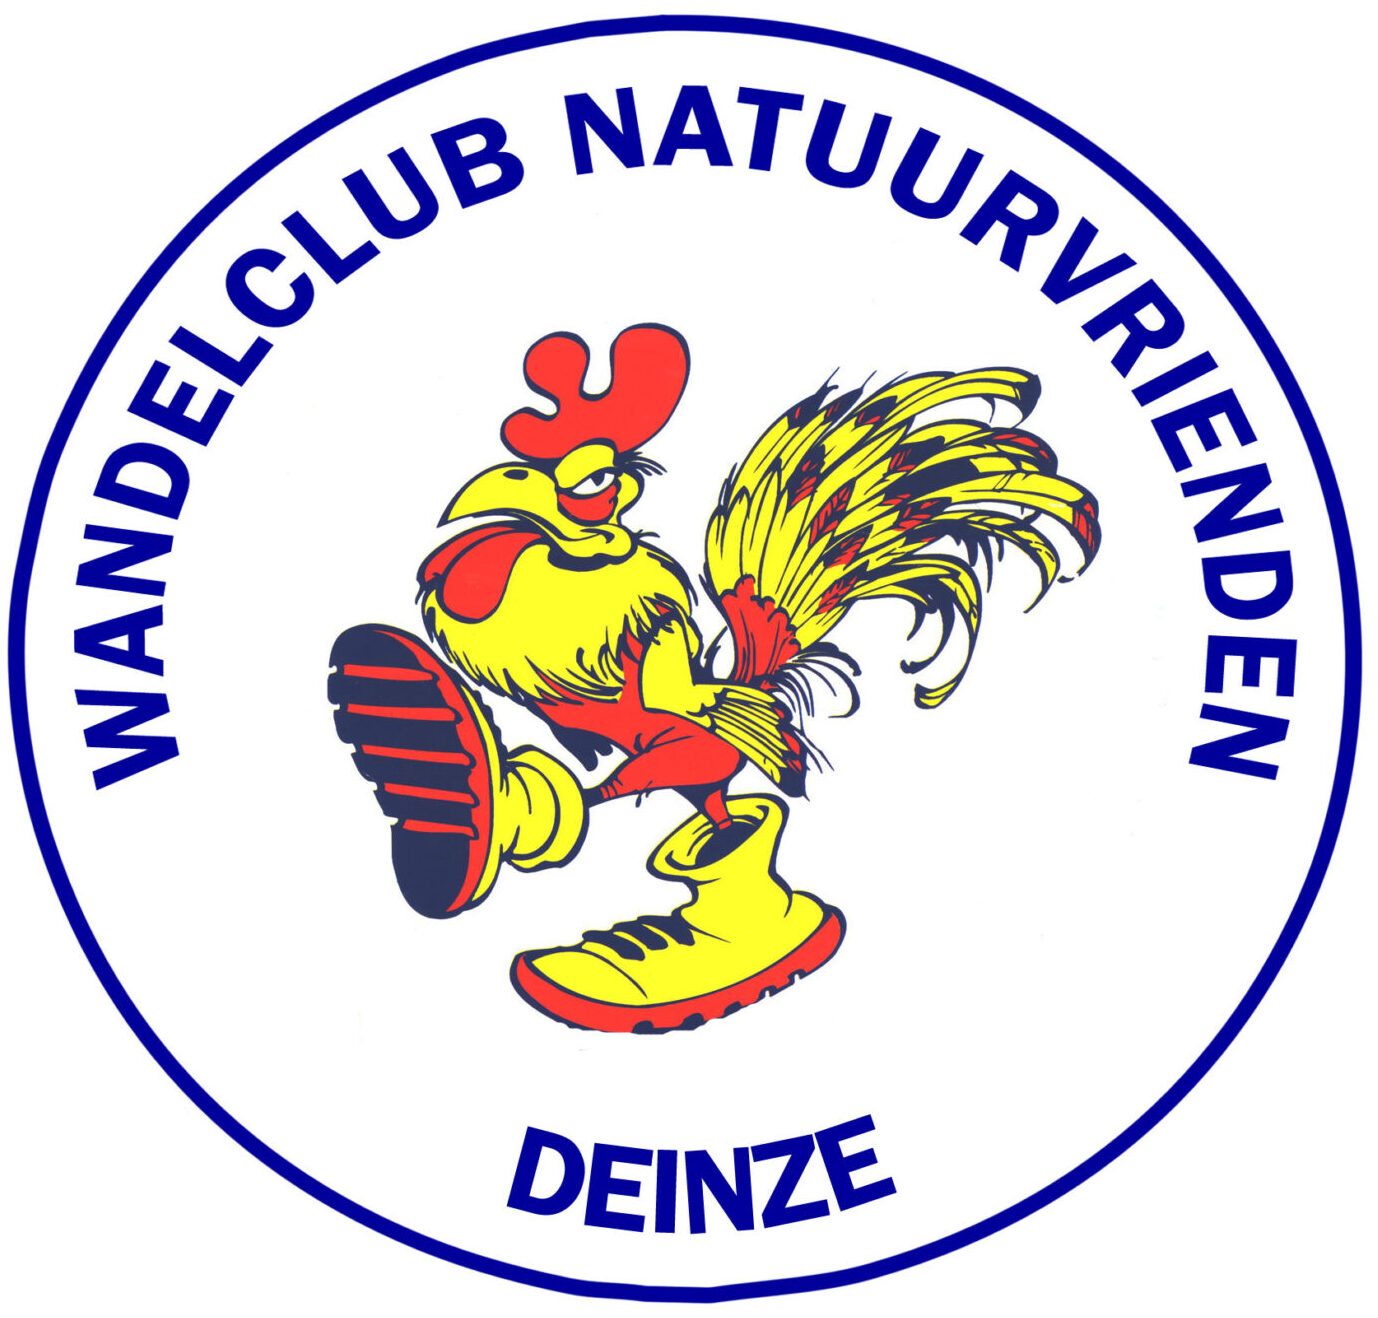 Wandelclub Natuurvrienden Deinze (WND3140)